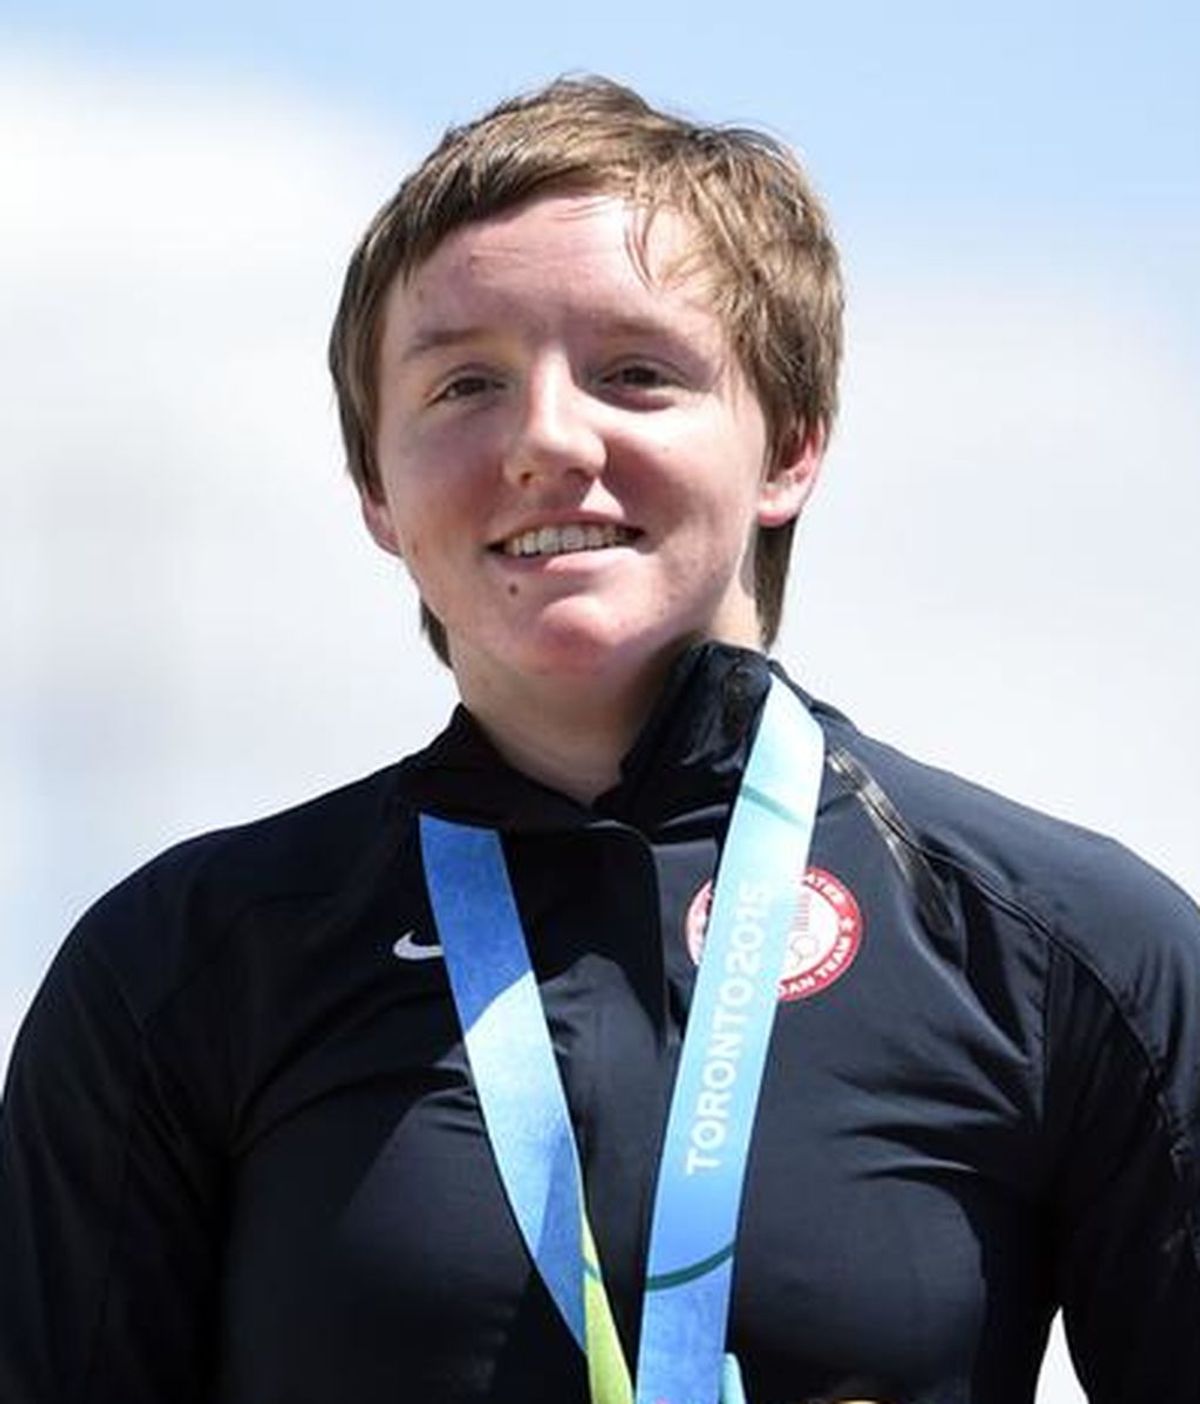 El mundo del deporte lamenta la muerte de Kelly Catlin, atleta olímpica de  23 años